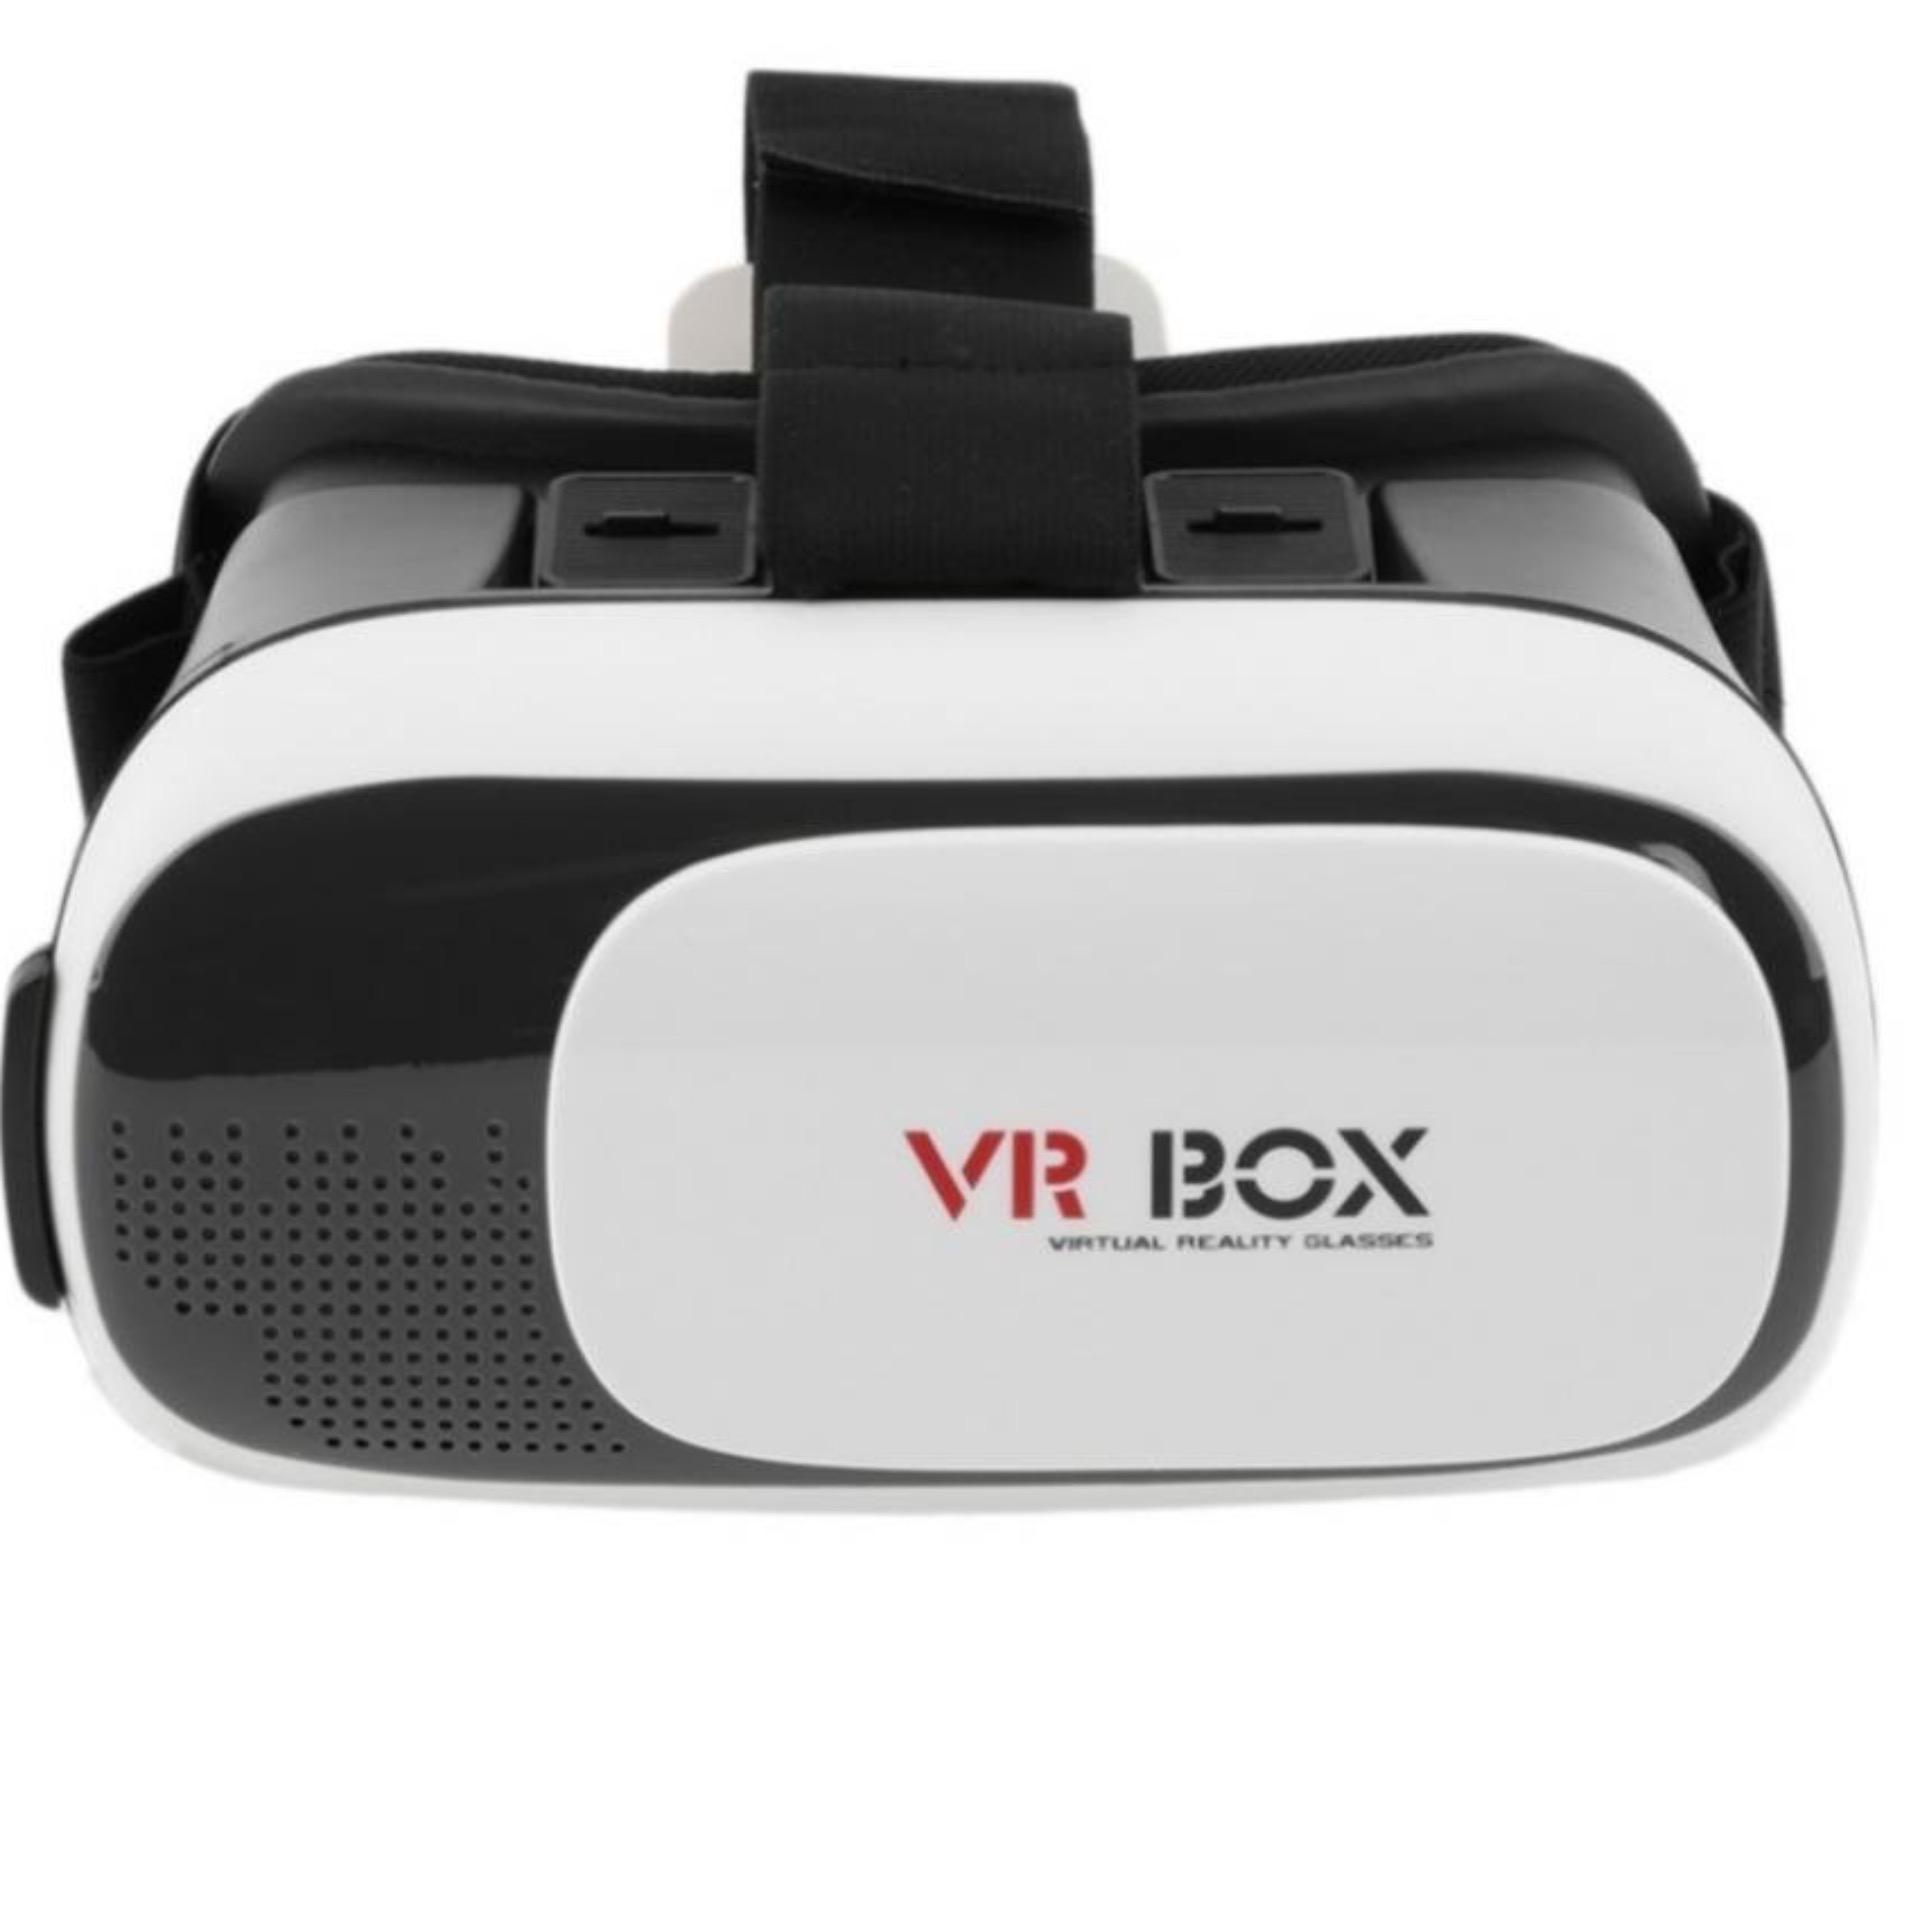 Kính thực tế ảo VR Box thế hệ thứ 2 (Đen phối trắng)